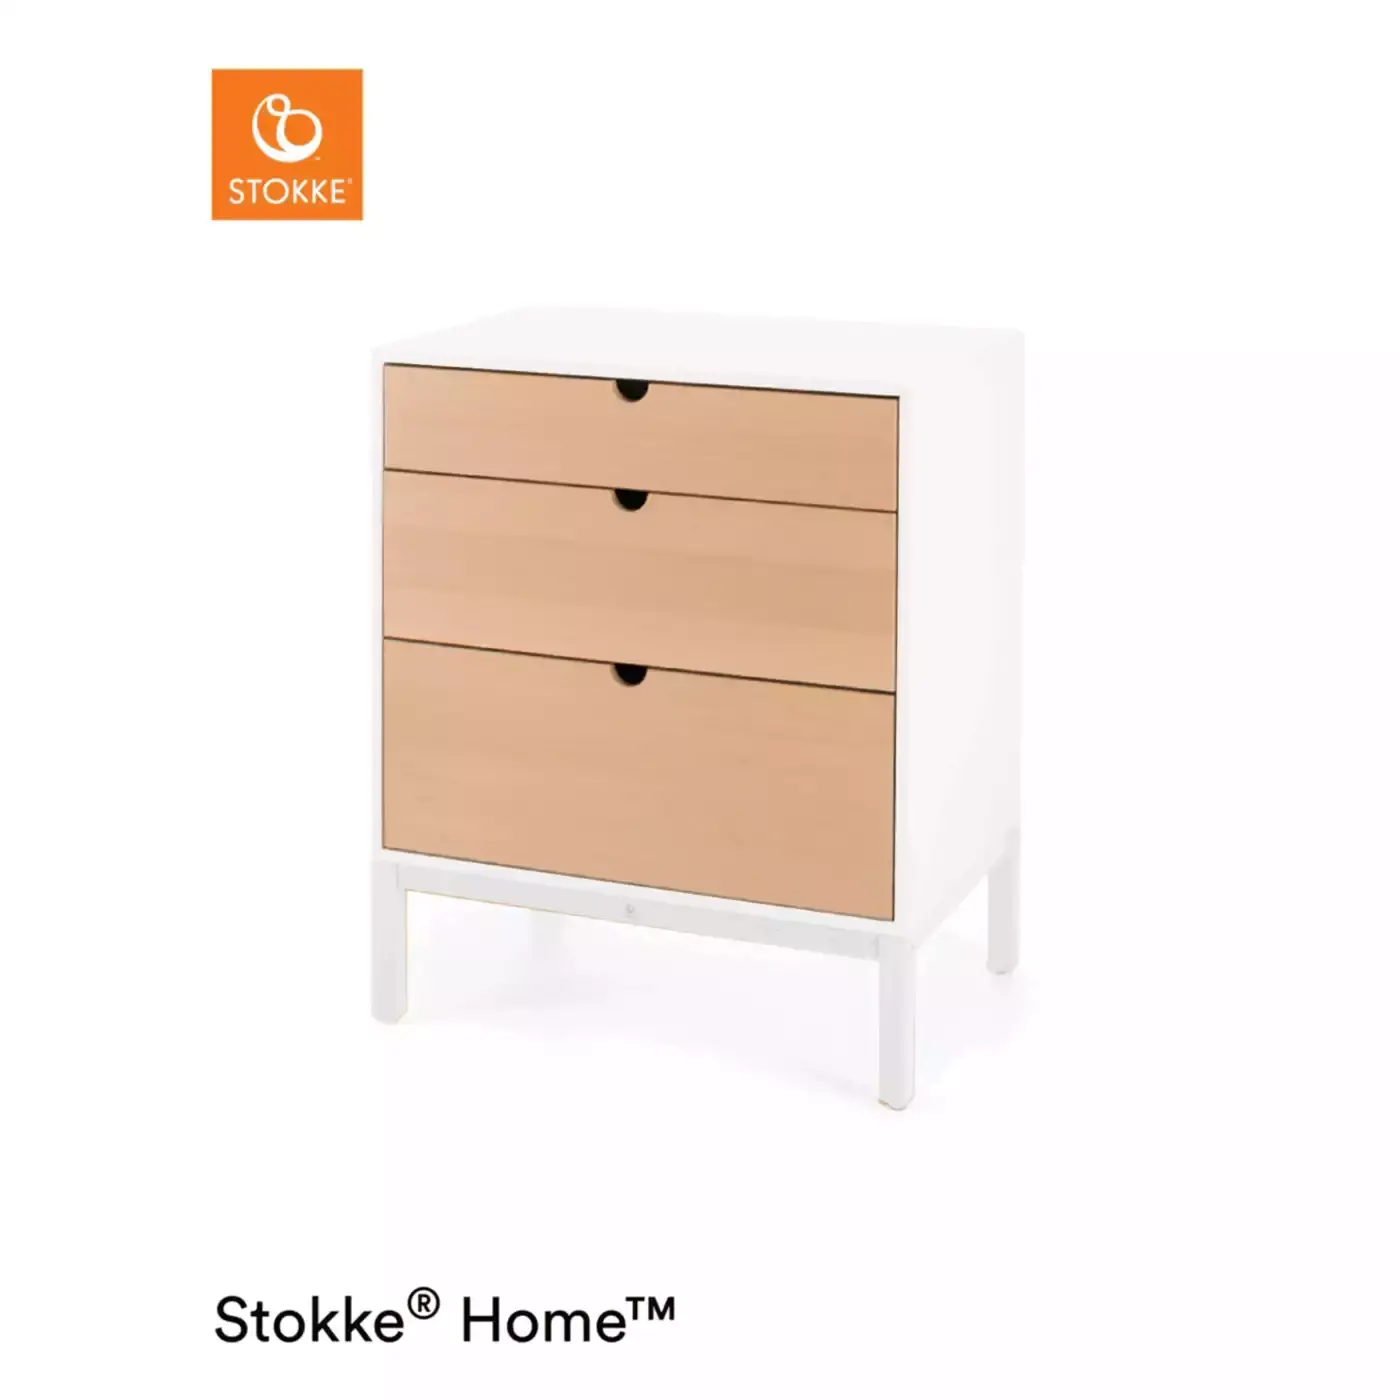 Home™ Dresser Natural Box 2 STOKKE 2000572130202 3